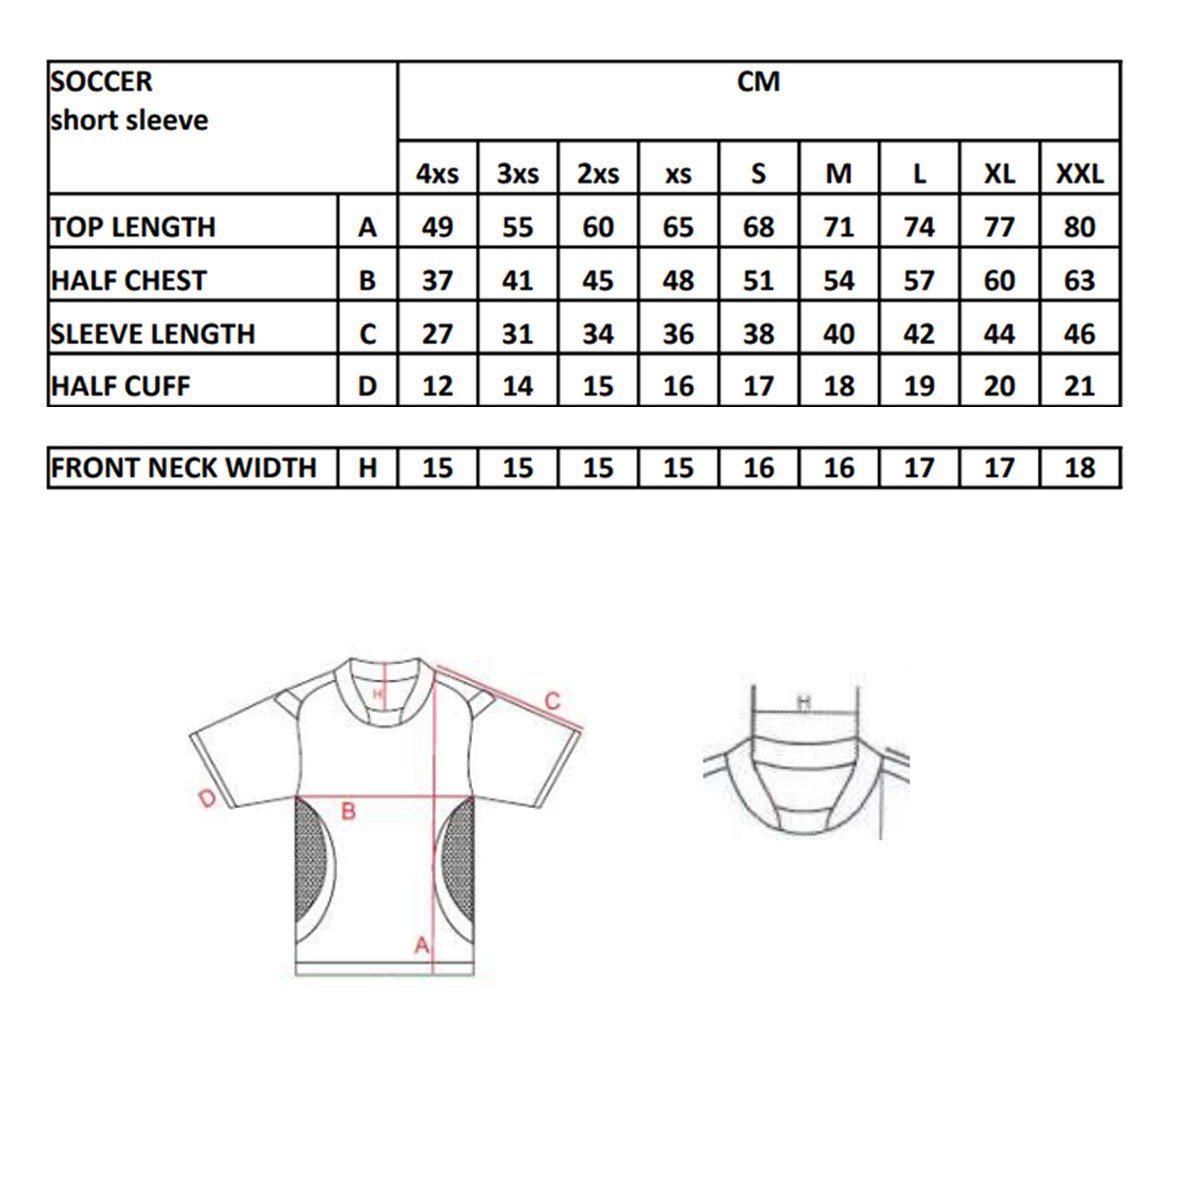 Geco Sportswear Fußballtrikot Fußballtrikot kurzarm Trikot Mesheinsätze Levante zweifarbig schwarz/weiß seitliche Fußball